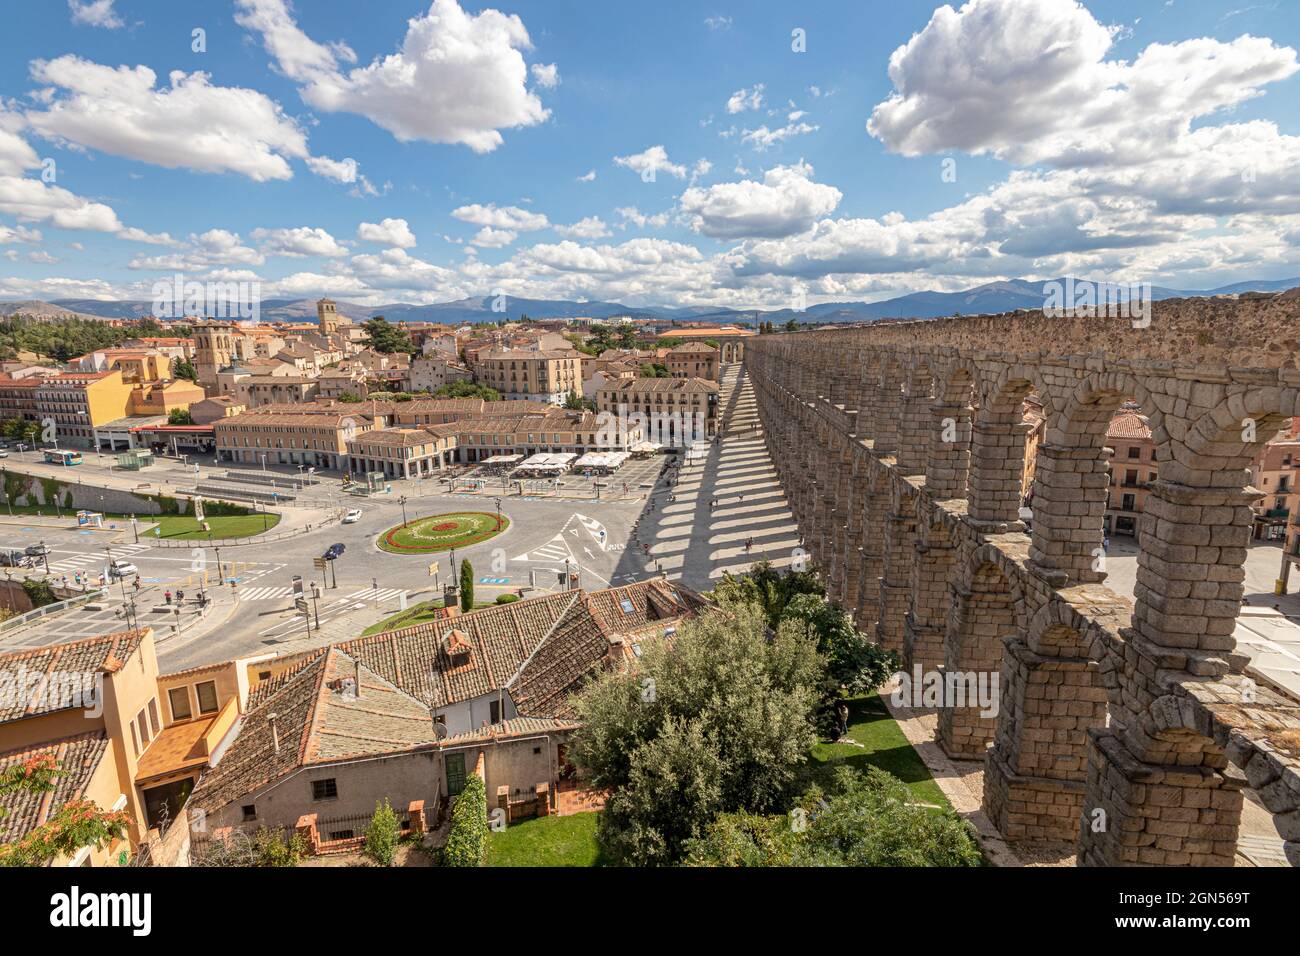 Segovia, Spanien. Blick auf die Altstadt und das Acueducto de Segovia, ein römisches Aquädukt oder eine Wasserbrücke, die im 1. Jahrhundert n. Chr. erbaut wurde Stockfoto